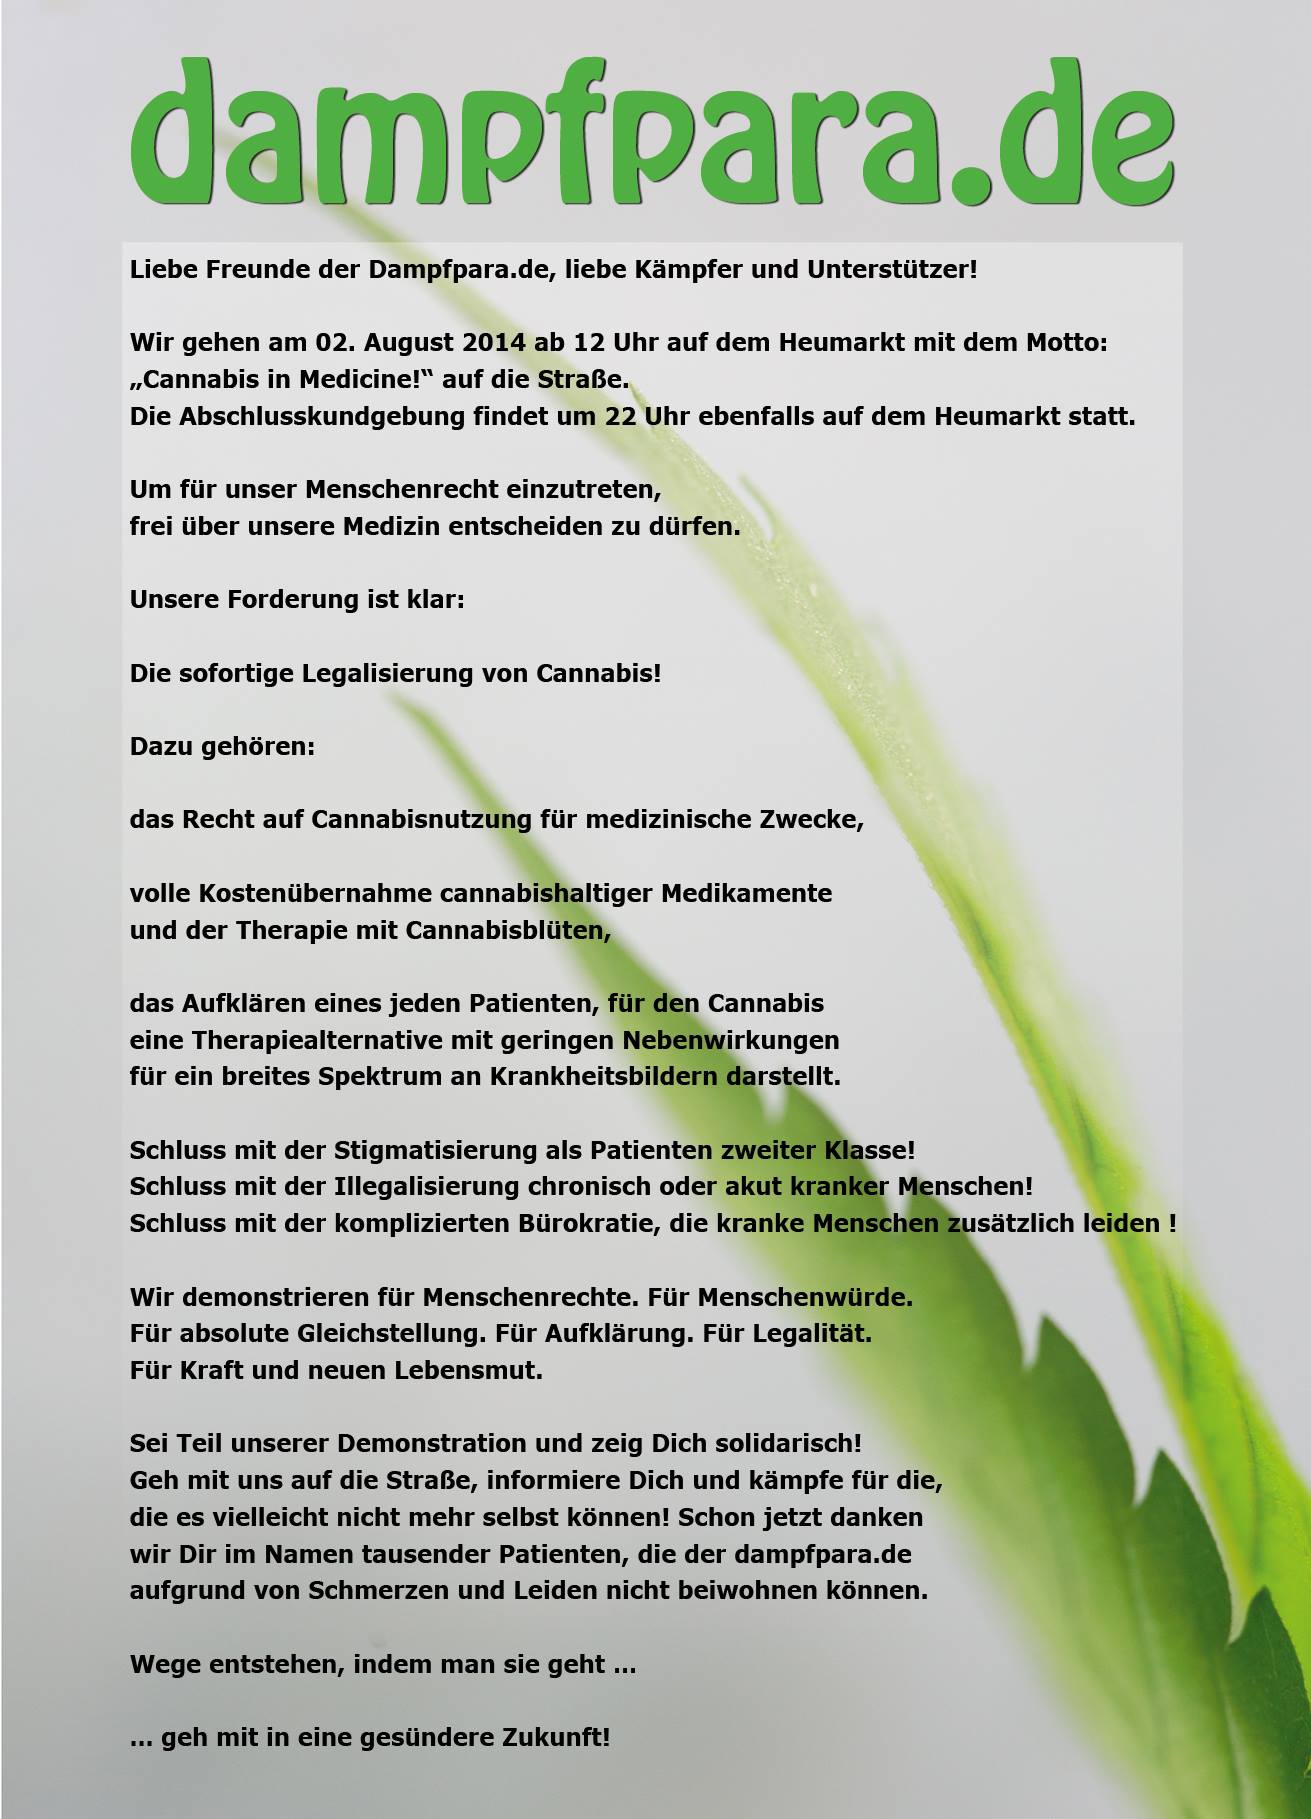 Forderungen der Dampfparade 2014 in Köln